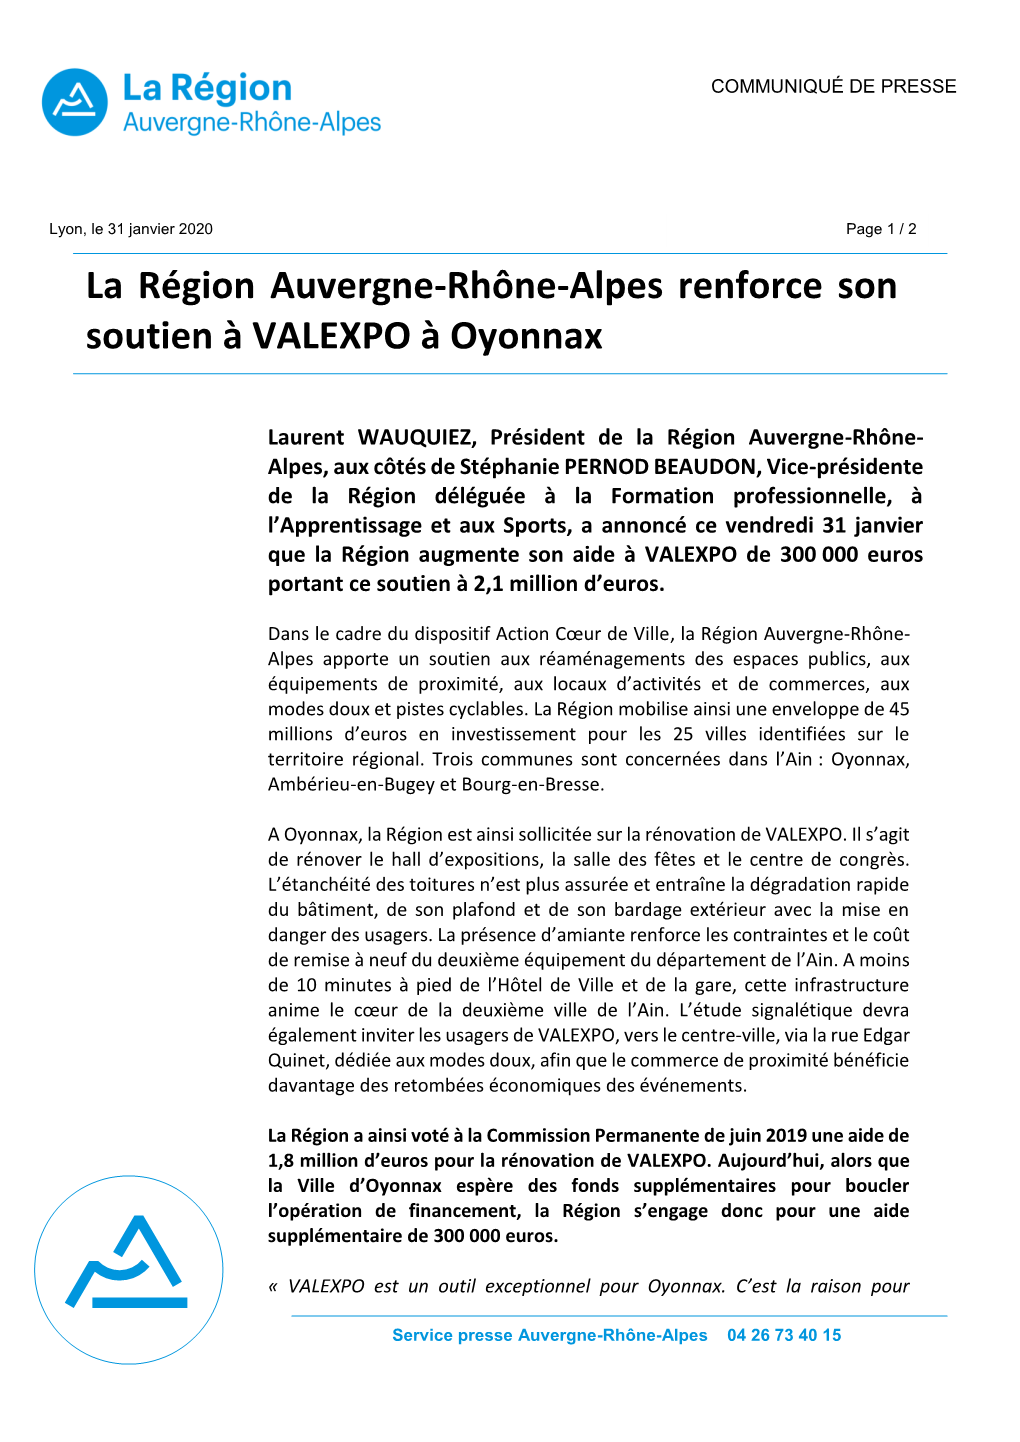 La Région Auvergne-Rhône-Alpes Renforce Son Soutien À VALEXPO À Oyonnax